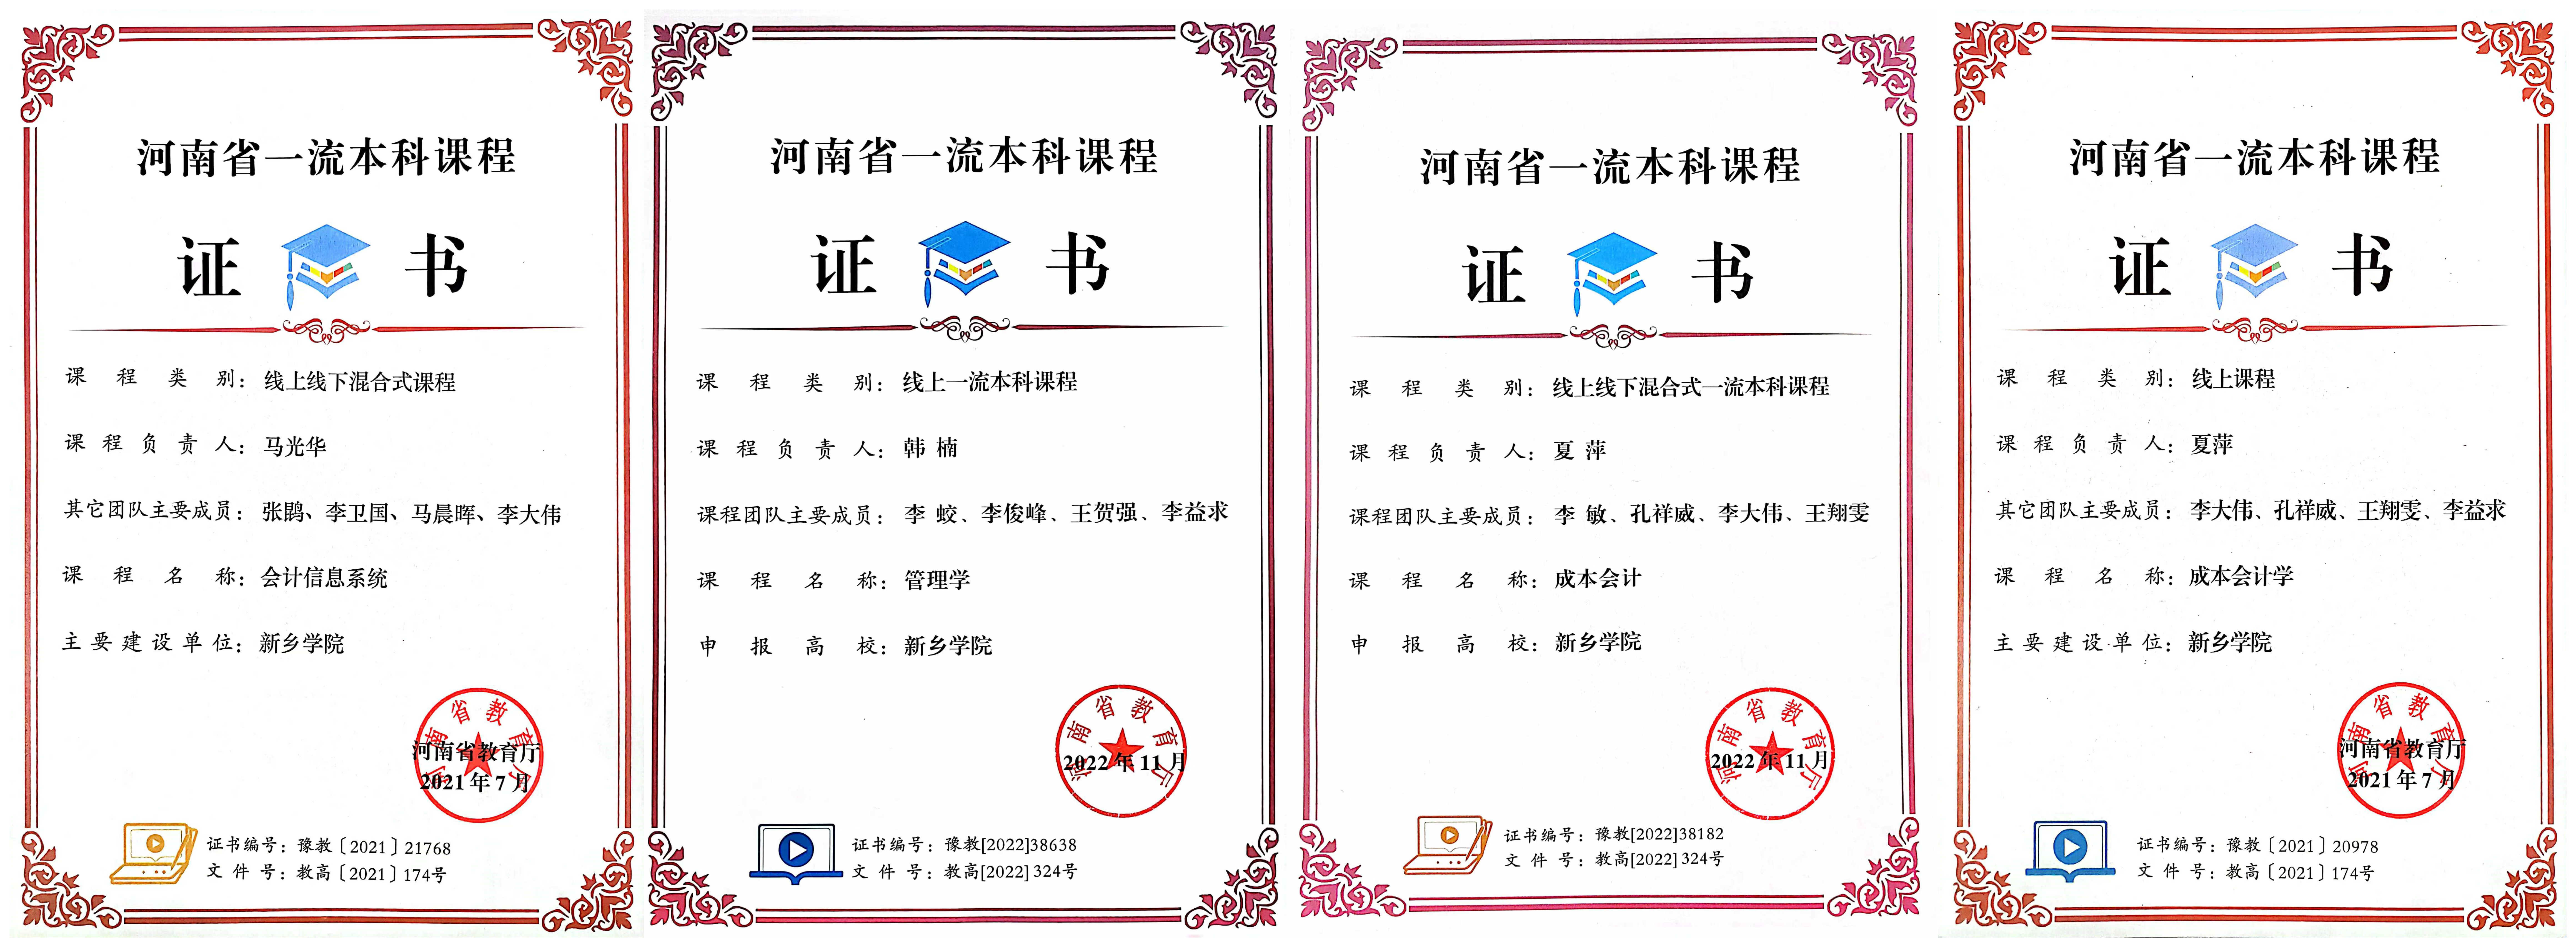 商学院两门课程被认定为第三批河南省一流本科课程